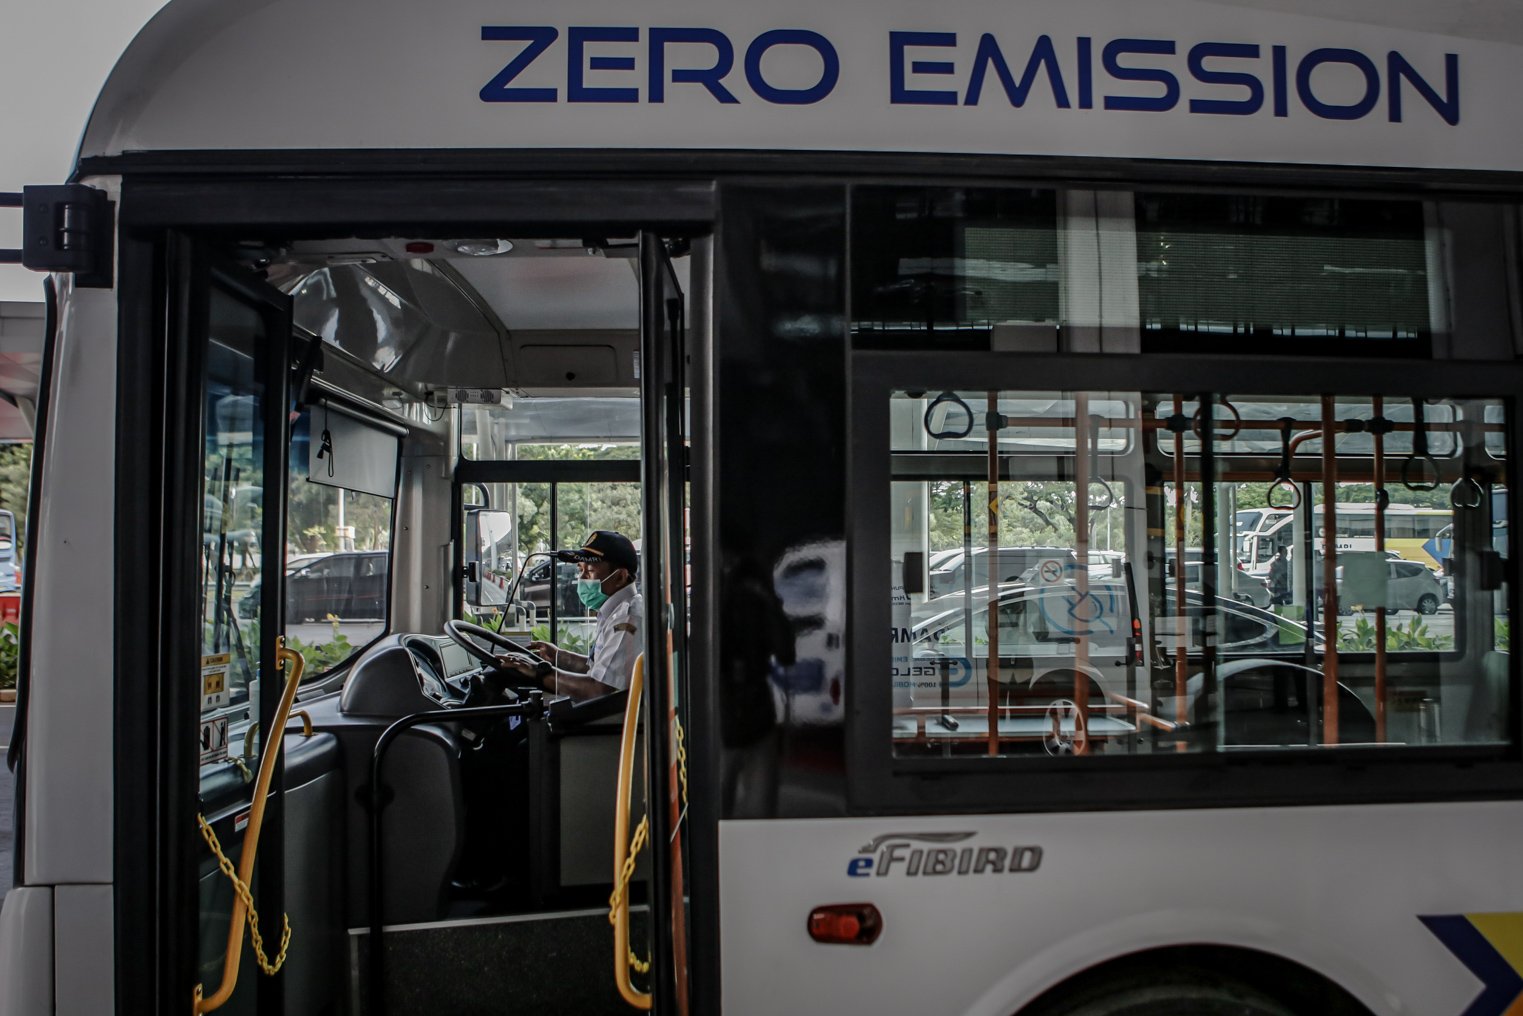 Pekerja mengecek keadaan bus saat peluncuran bus listrik di Bandara Soekarno Hatta, Tangerang, Banten, Kamis (25/11/2021). Perum Damri meluncurkan bus listrik untuk angkutan penumpang rute bandara sebagai bentuk komitmen dalam mendorong penggunaan bus listrik berbasis baterai hingga 20 persen dari populasi kendaraan di Indonesia pada 2025 dan penurunan emisi gas buang hingga 29 persen pada 2030. ANTARA FOTO/Fauzan/wsj.\r\n